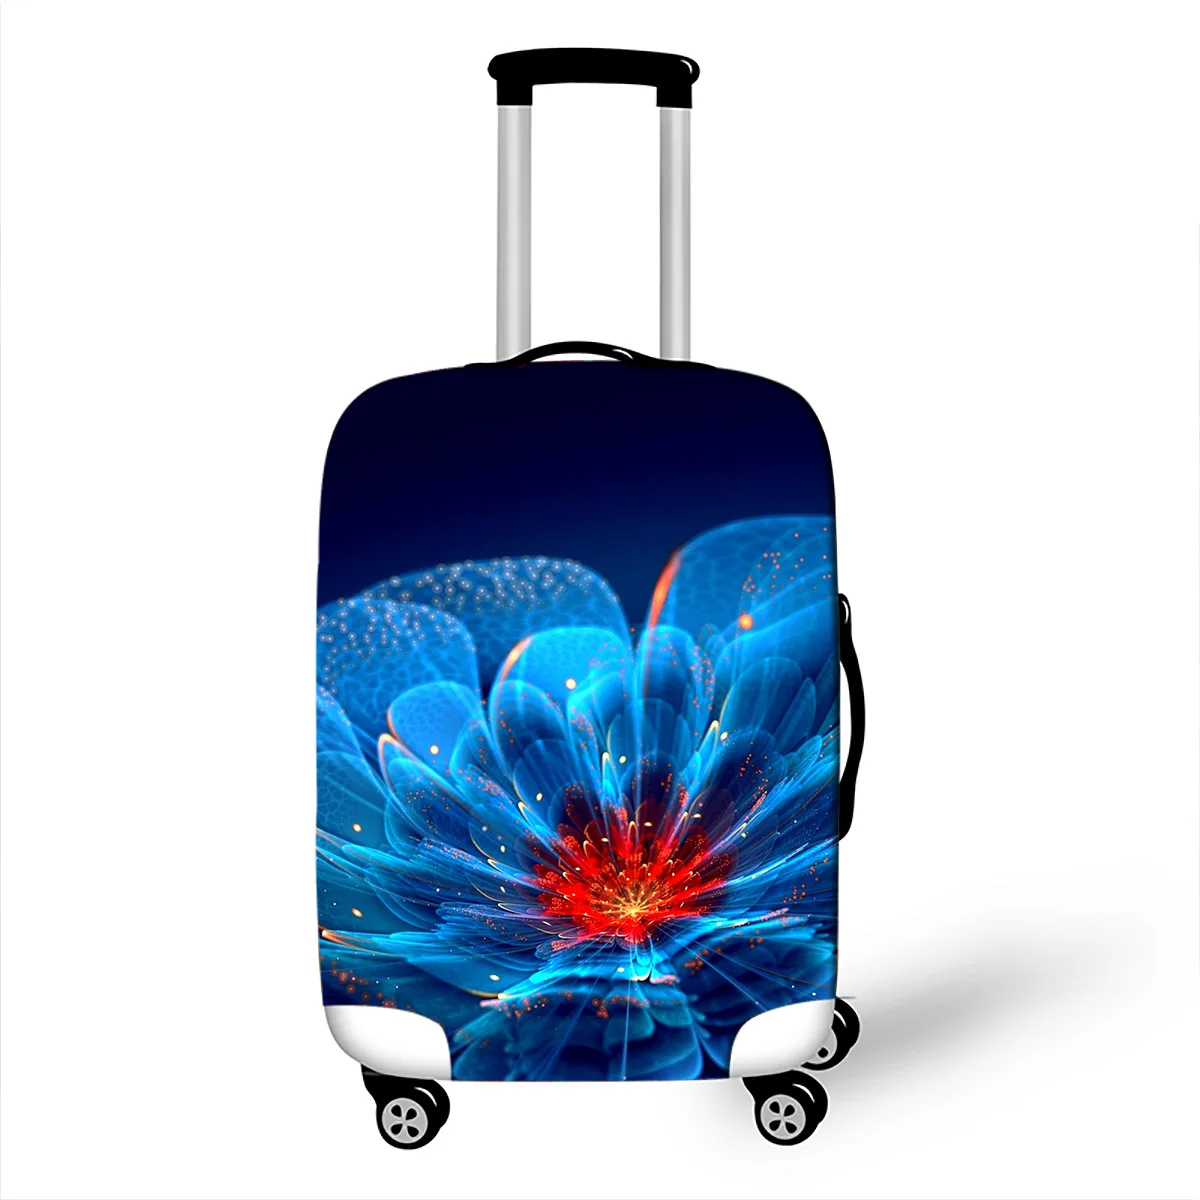 Защитный чехол для чемодана на колесиках с 3D принтом S/M/L/XL 4 размера для багажа 18-32 дюймов, эластичные тканевые пылезащитные Чехлы для цветов